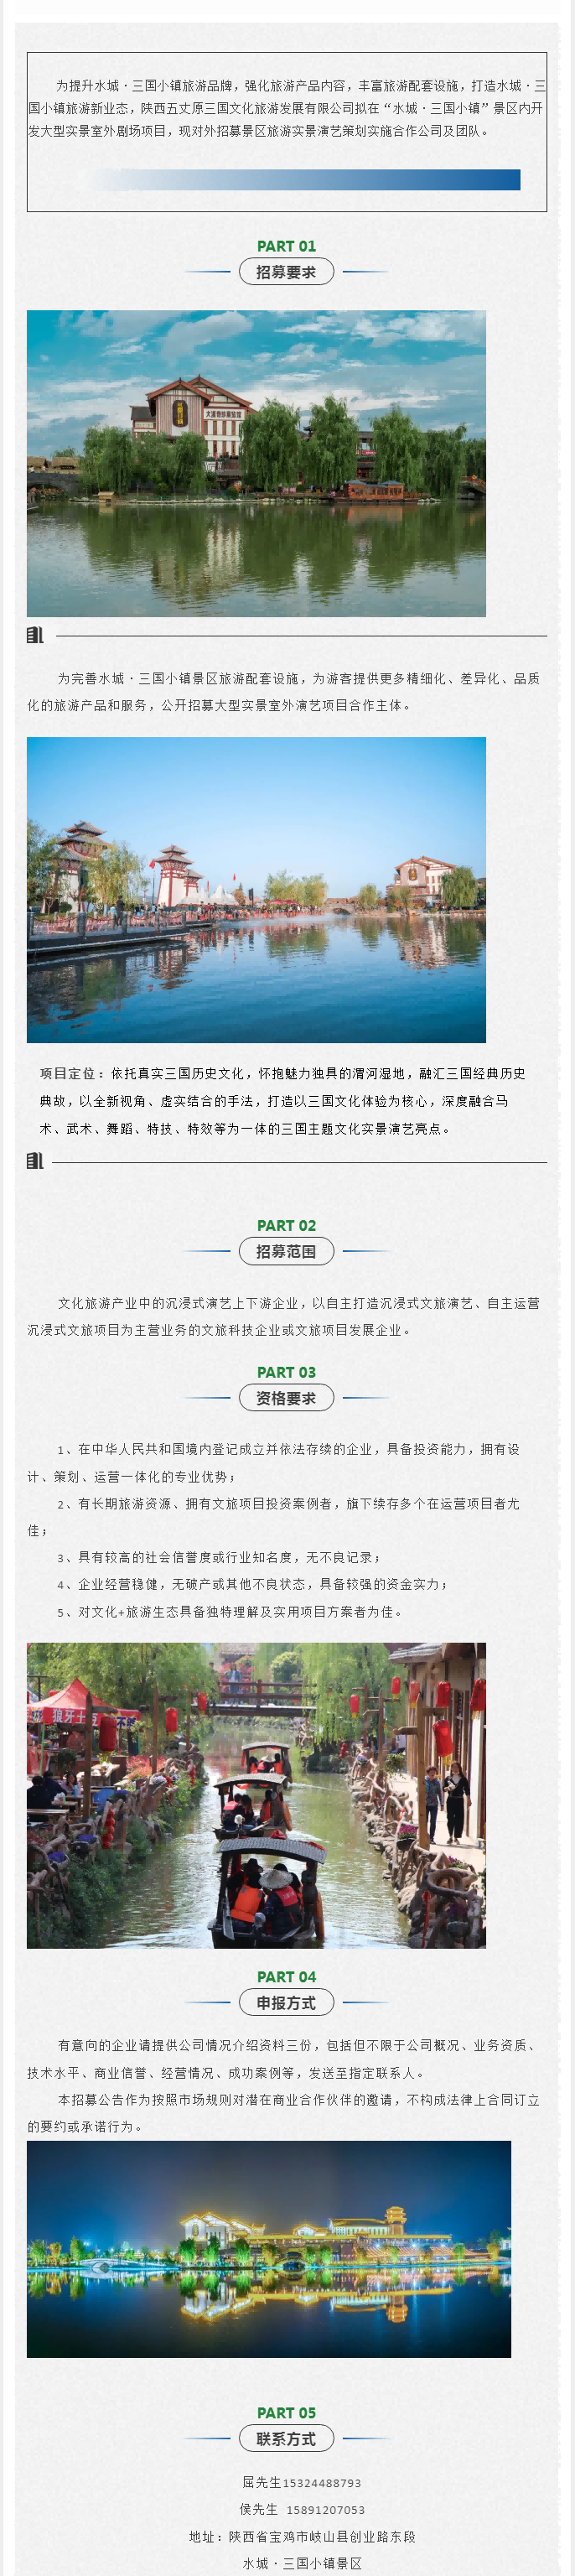 水城·三国小镇关于招募大型实景演艺项目合作主体的公告(1).png